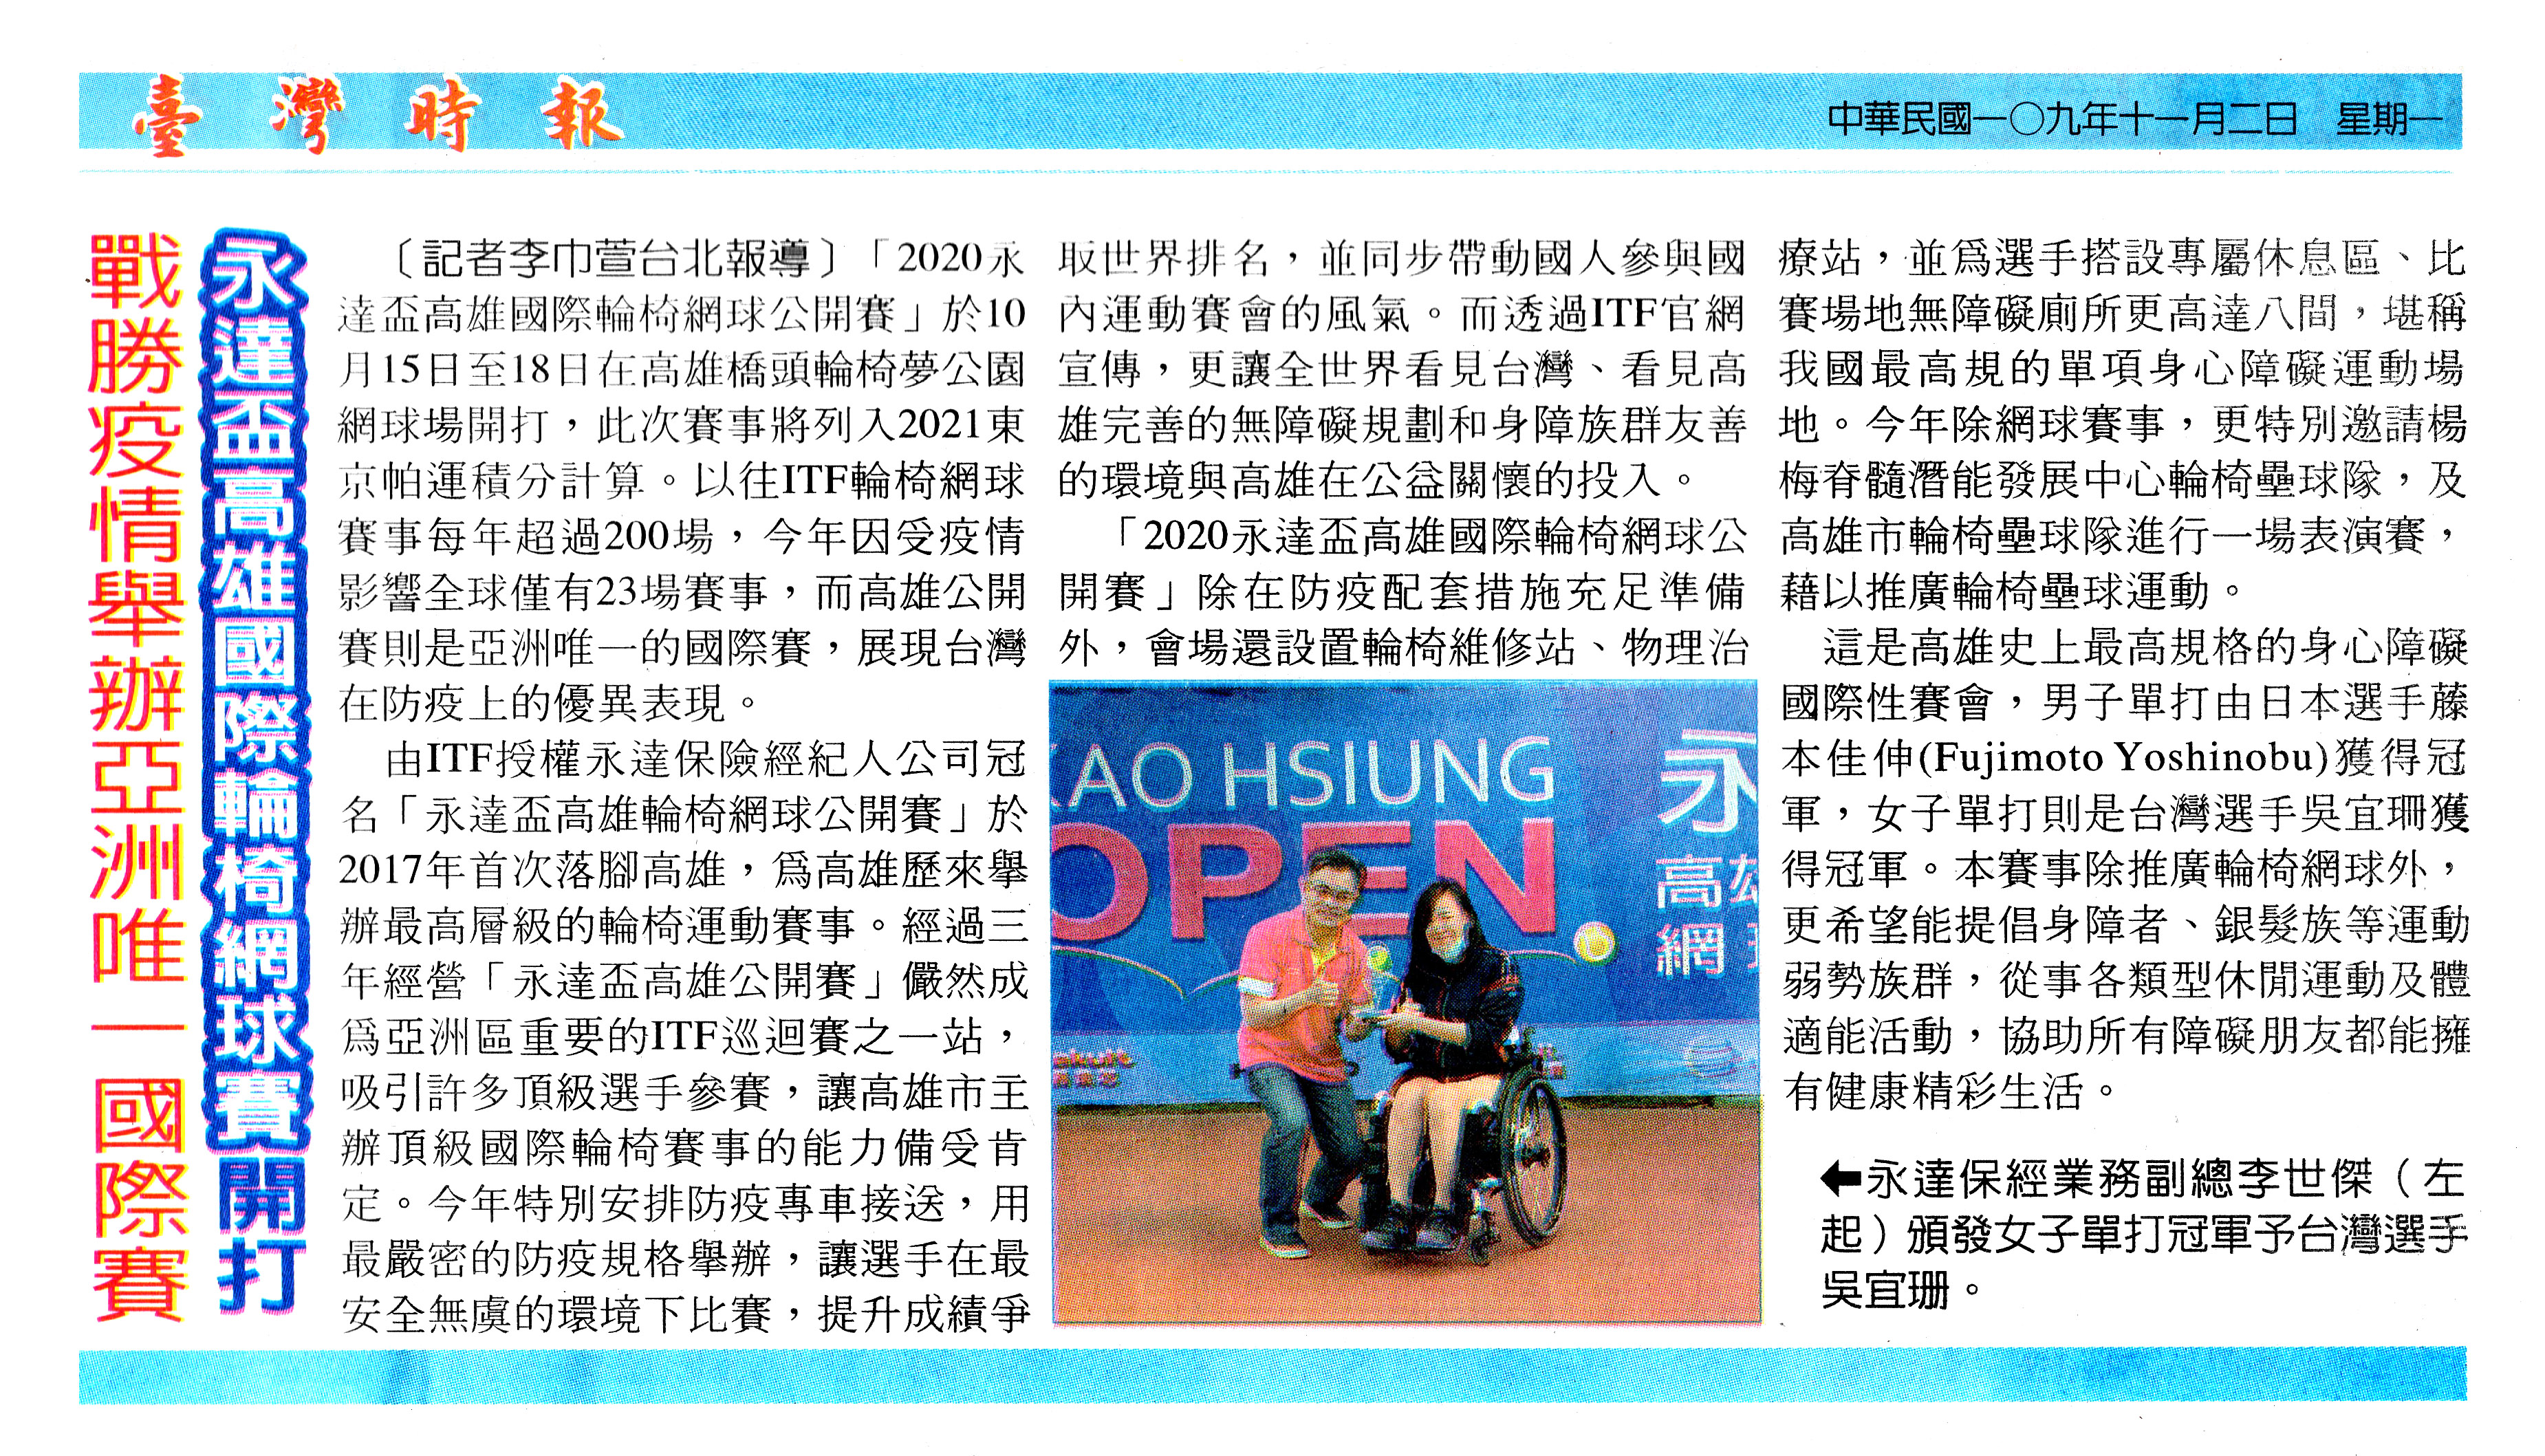 「永達高雄國際輪椅網球開打 戰勝疫情舉辦亞洲唯一國際賽 報導圖檔